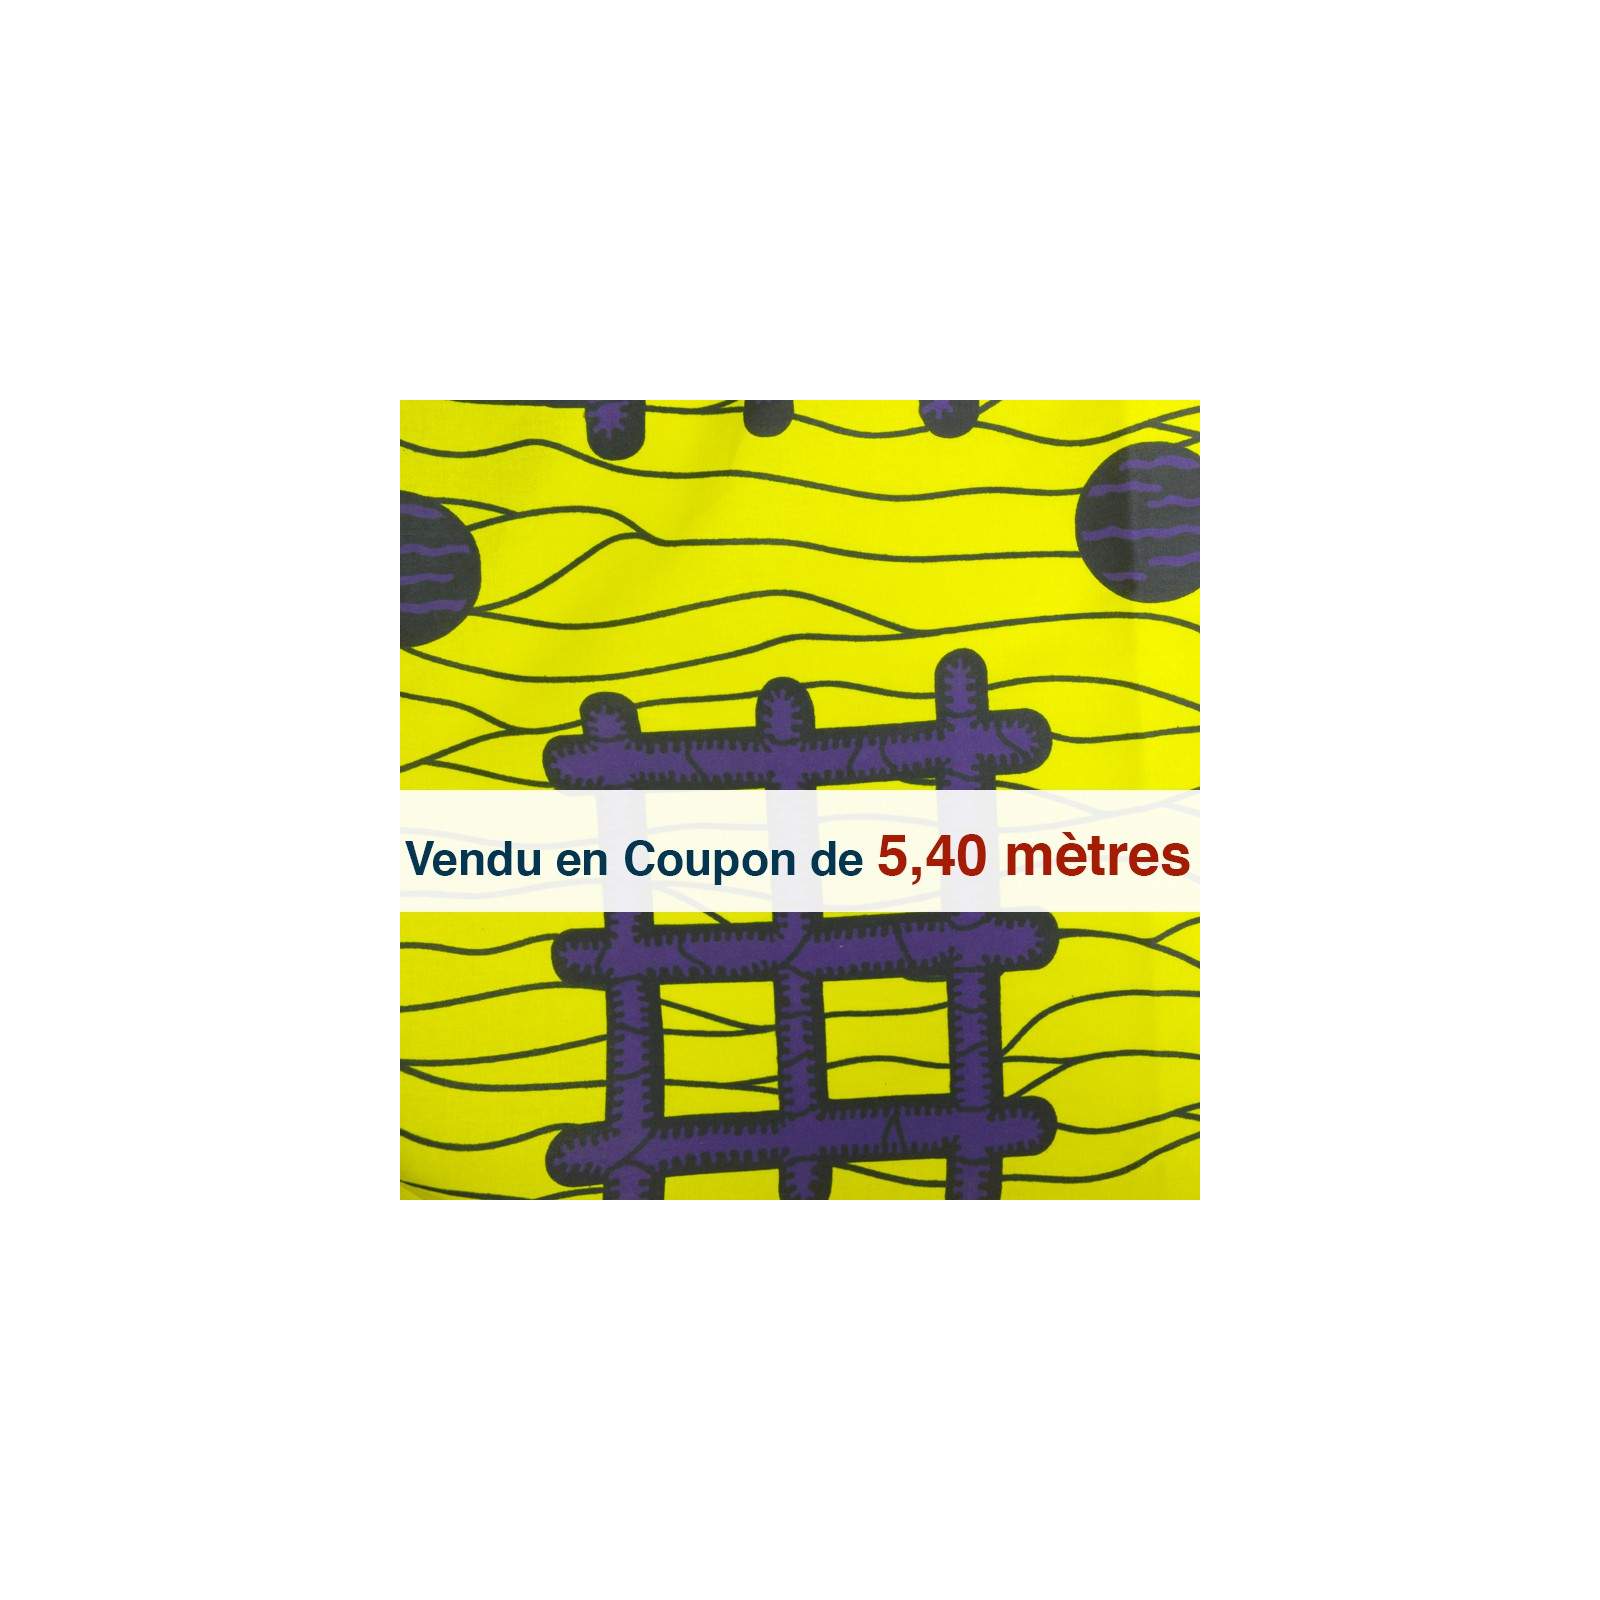 Tissu Africain - Wax hashtag jaune( coupon de 5,40 mètres)